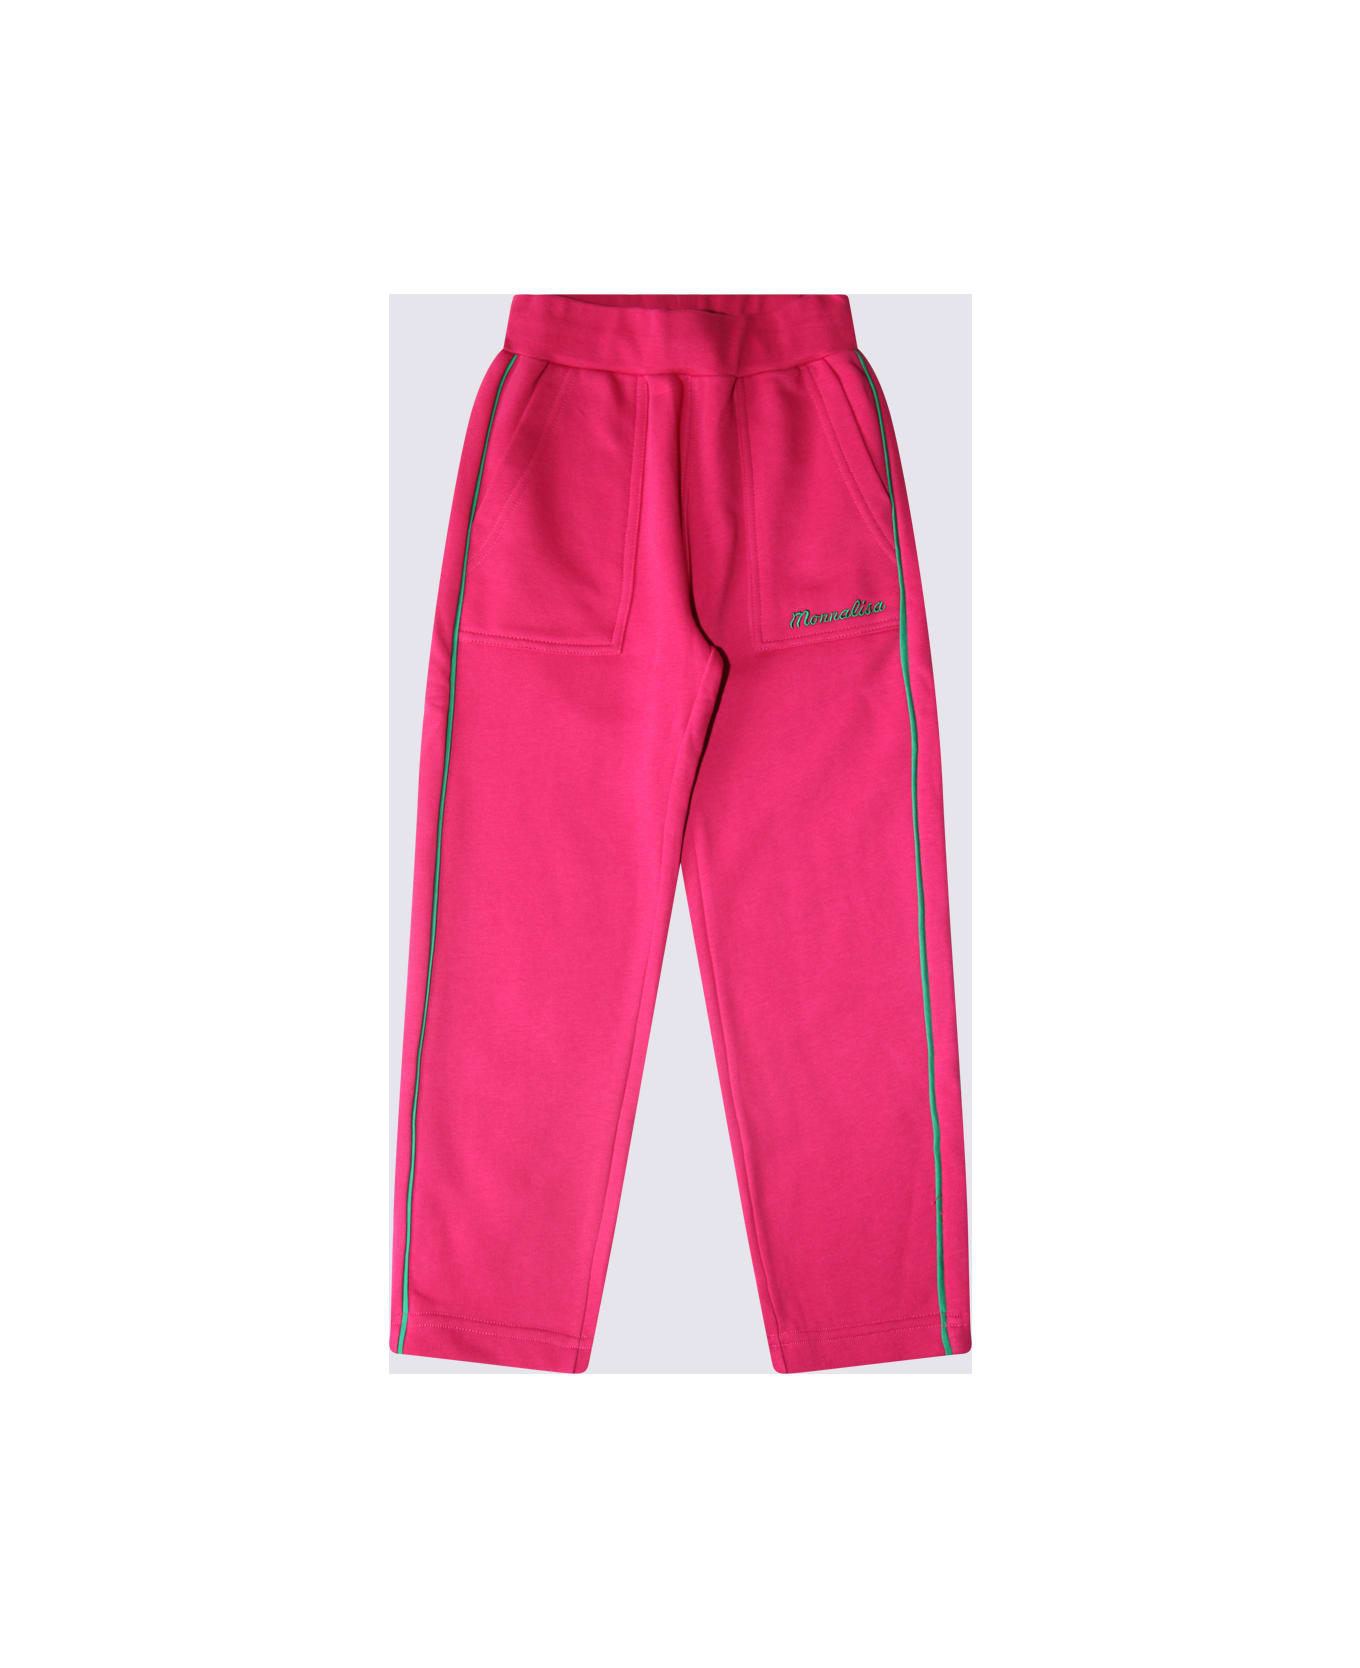 Monnalisa Pink Cotton Pants - Pink